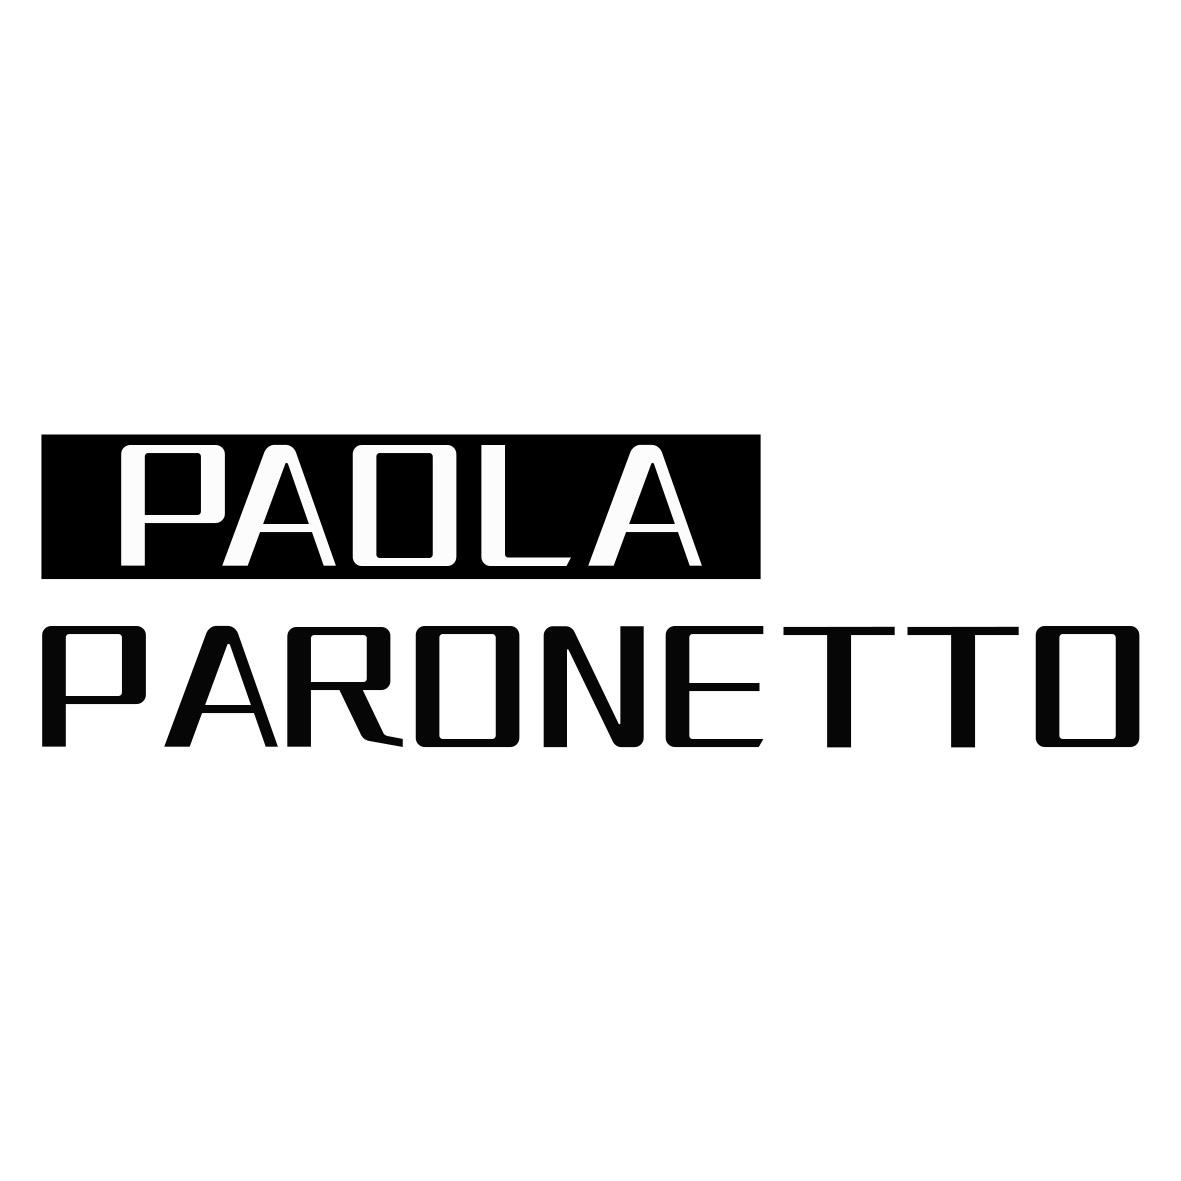 PAOLA PARONETTO